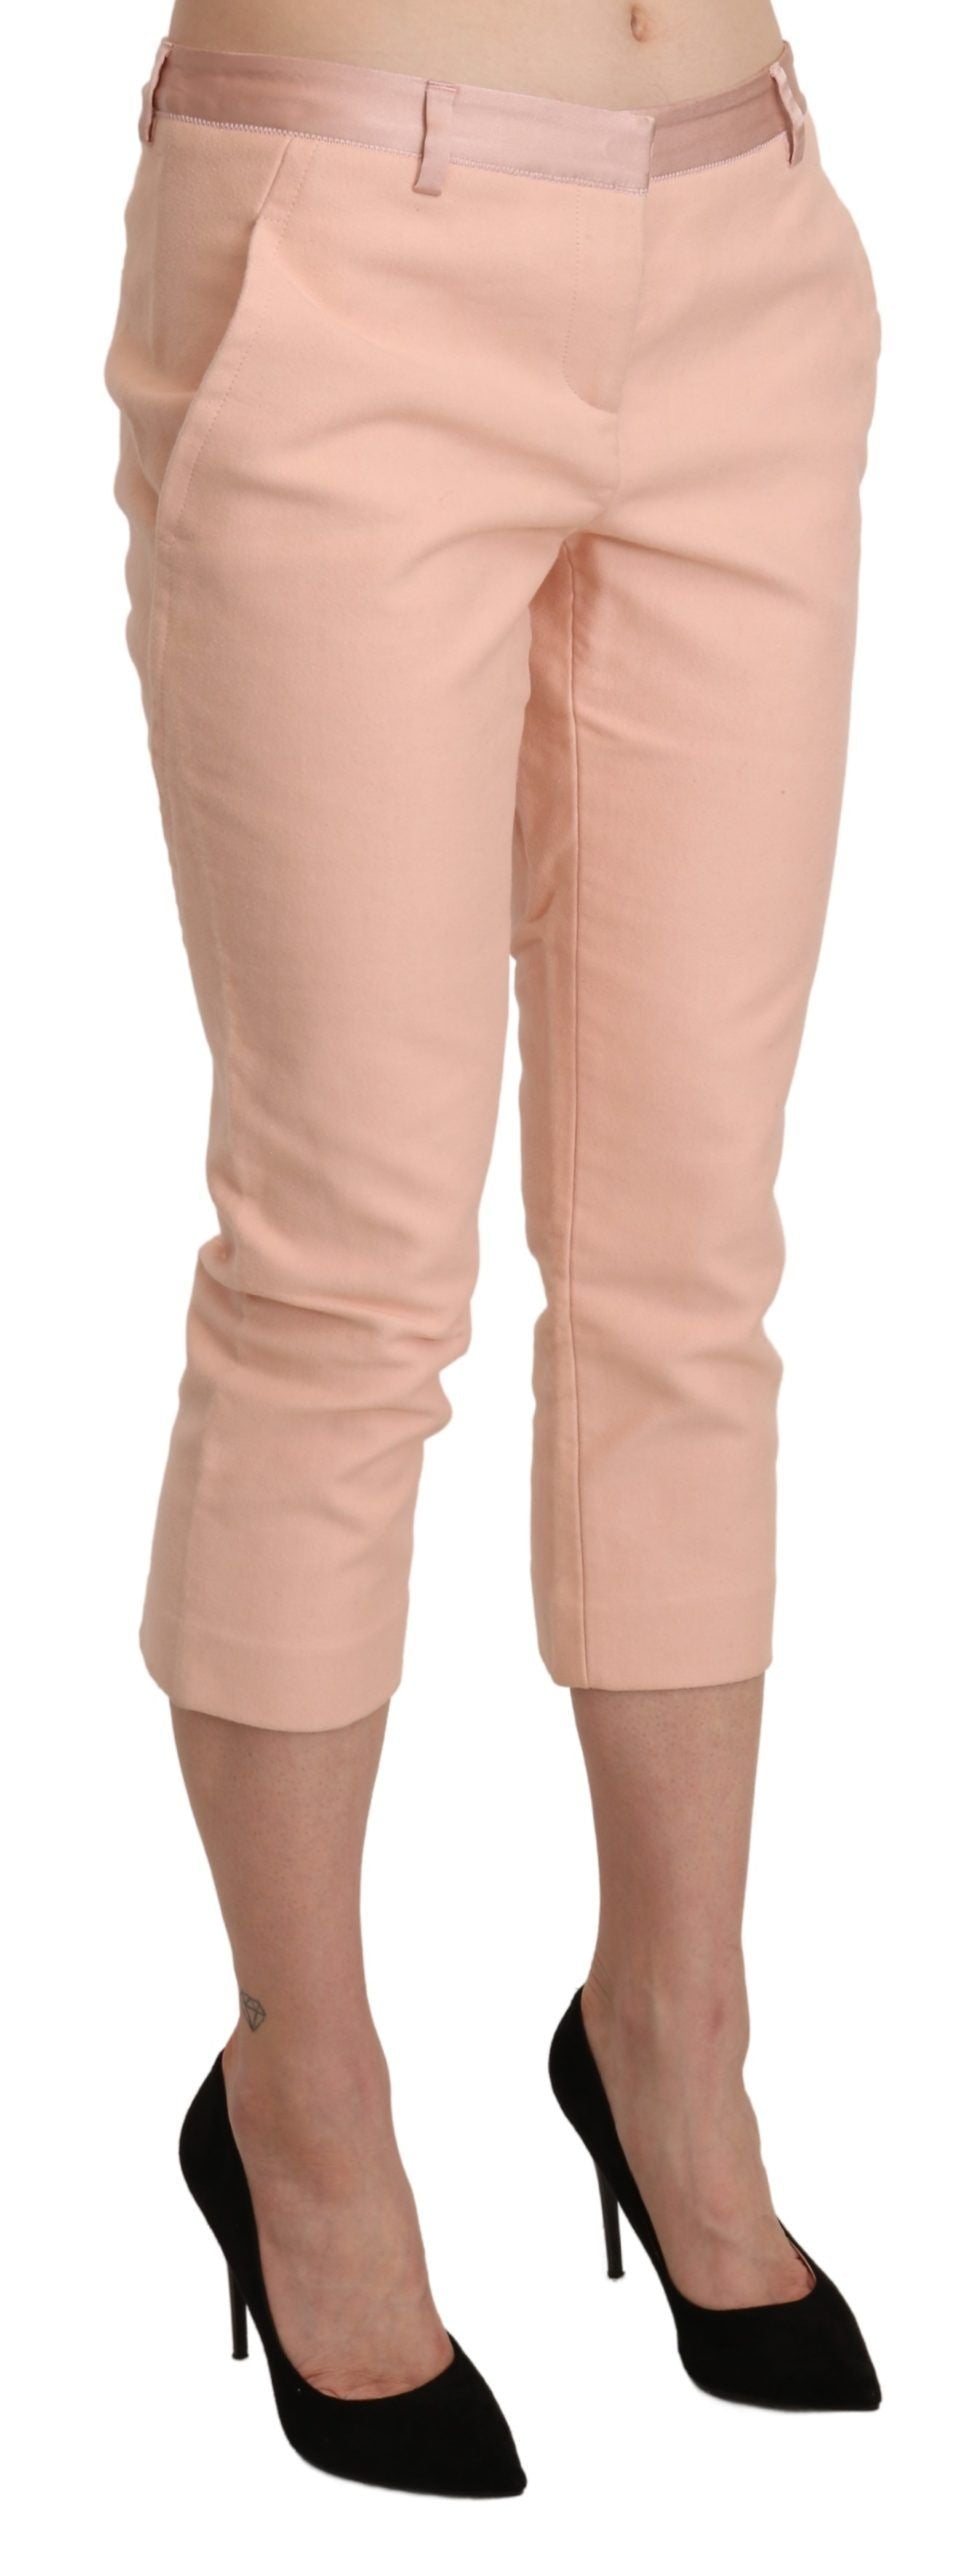 Chic Pink Skinny Capri Pants